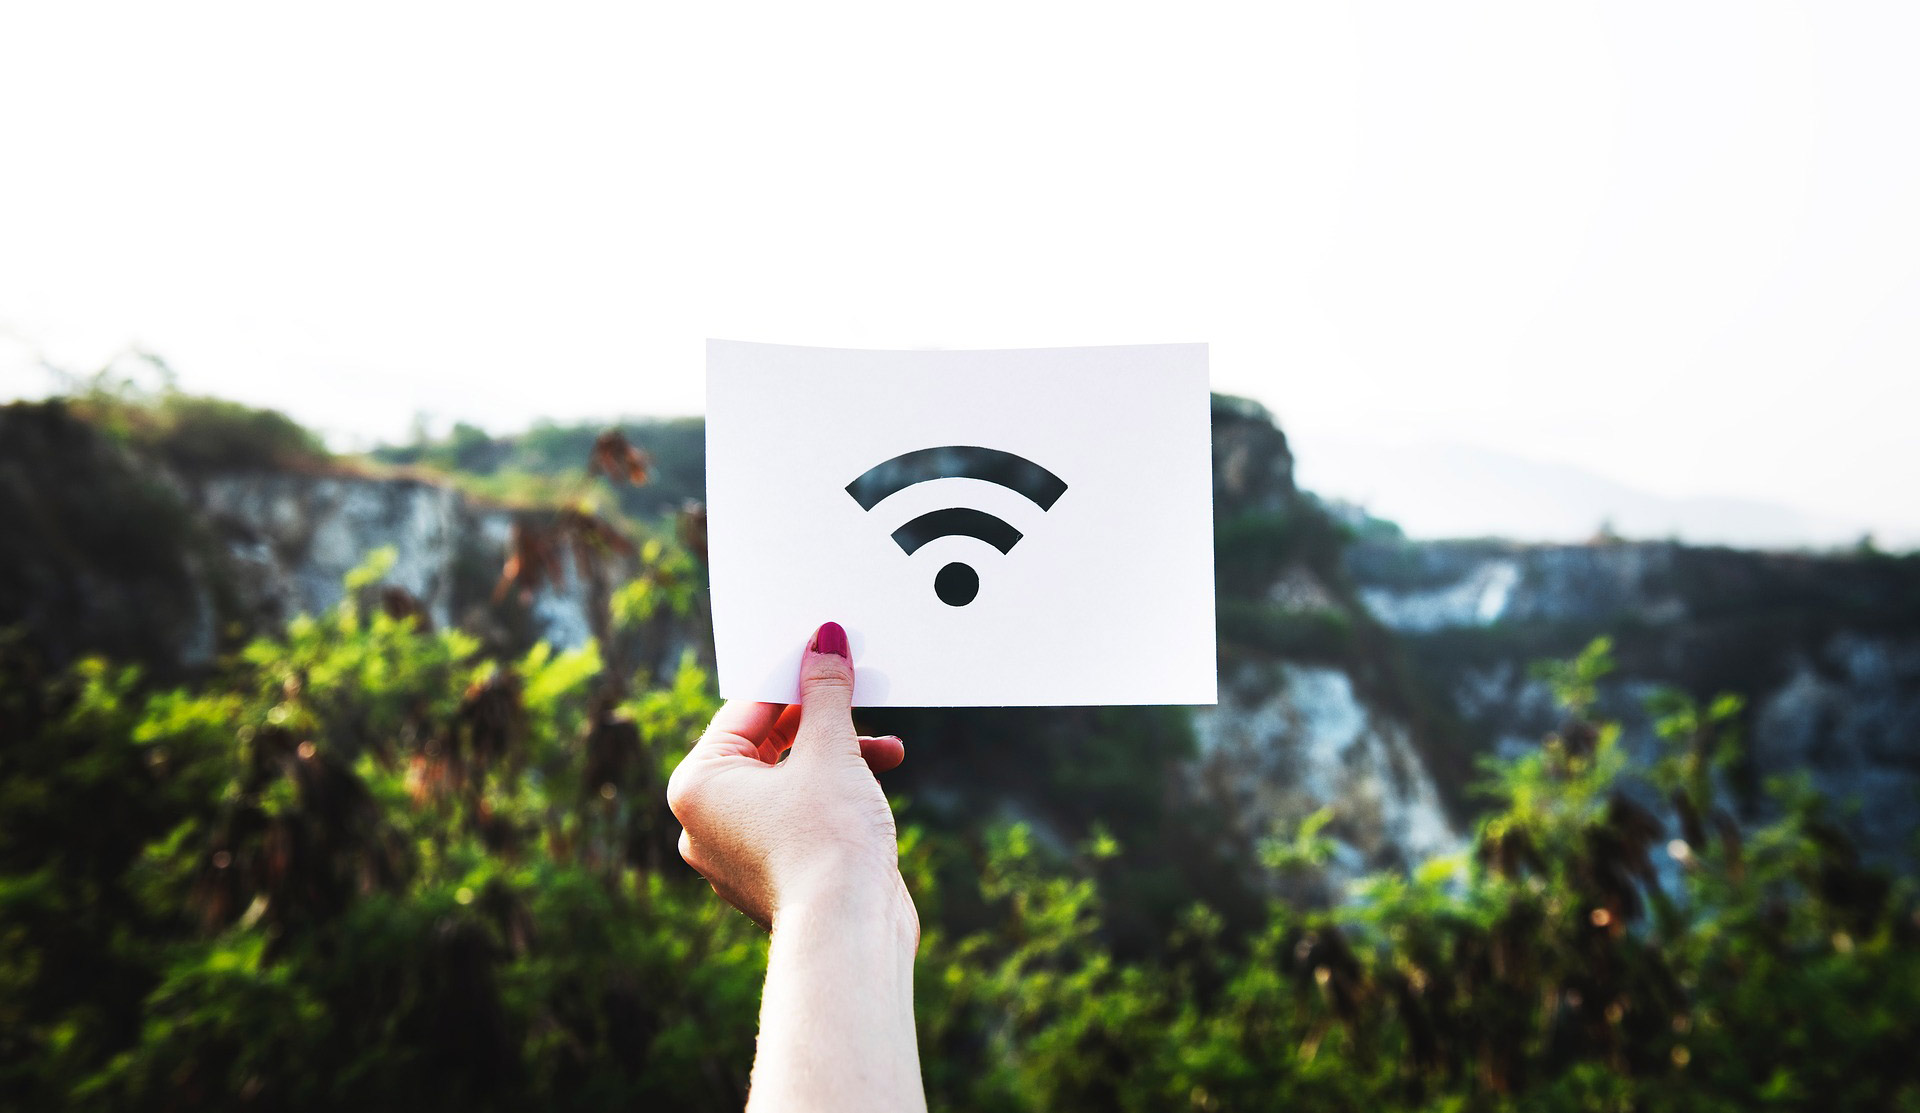 Olbia senza wifi gratuita: Comune si registra, ma non partecipa a bando europeo